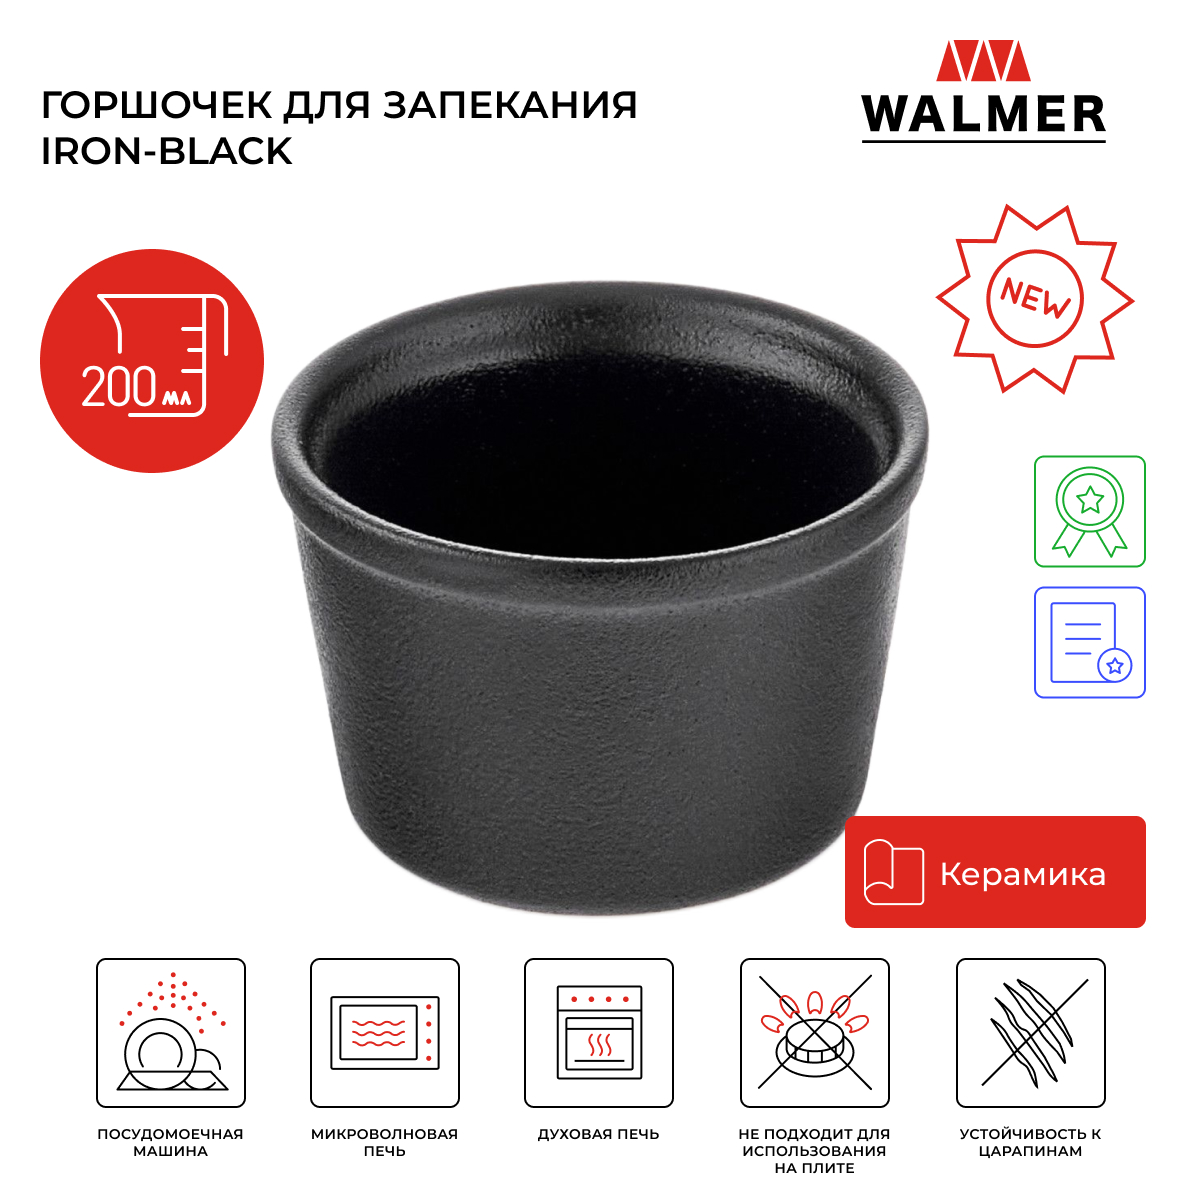 Горшочек для запекания Walmer Iron-Black, 0.2 л, цвет черный W37001056